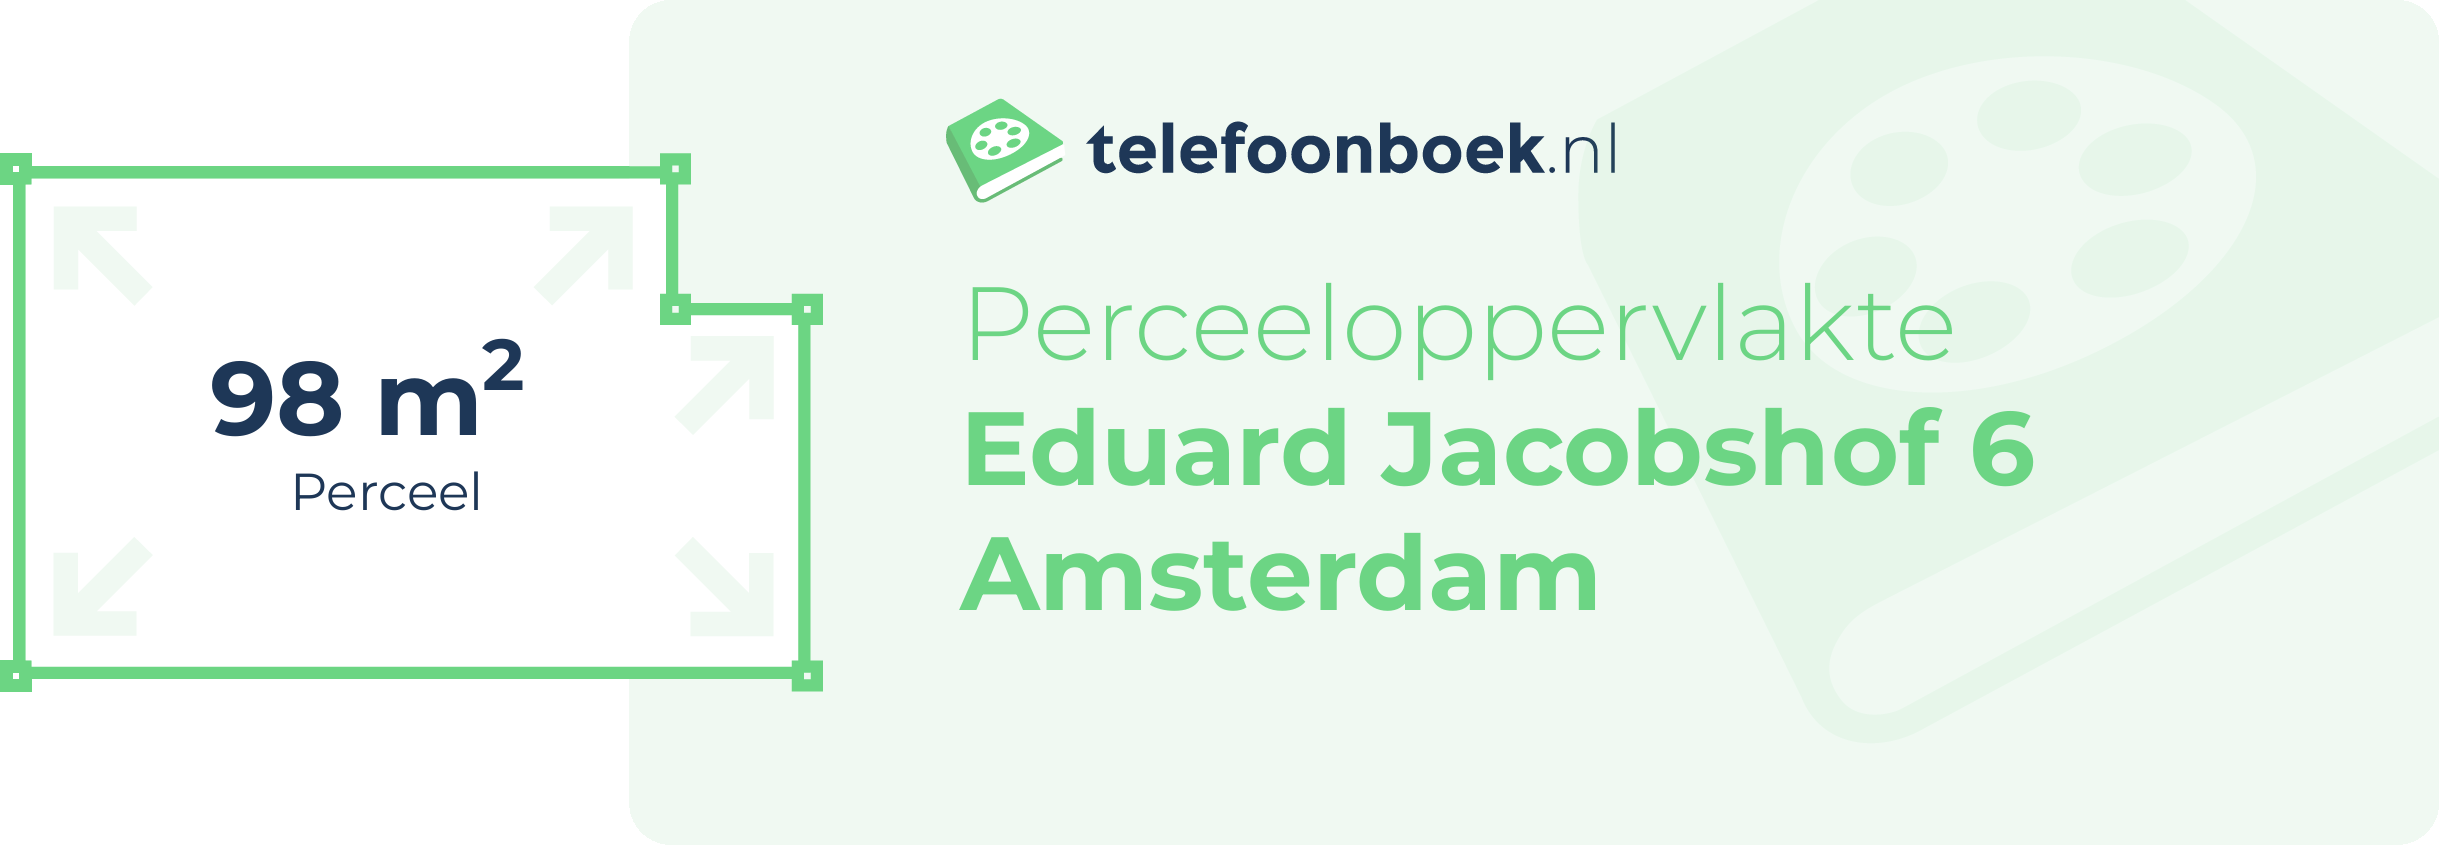 Perceeloppervlakte Eduard Jacobshof 6 Amsterdam